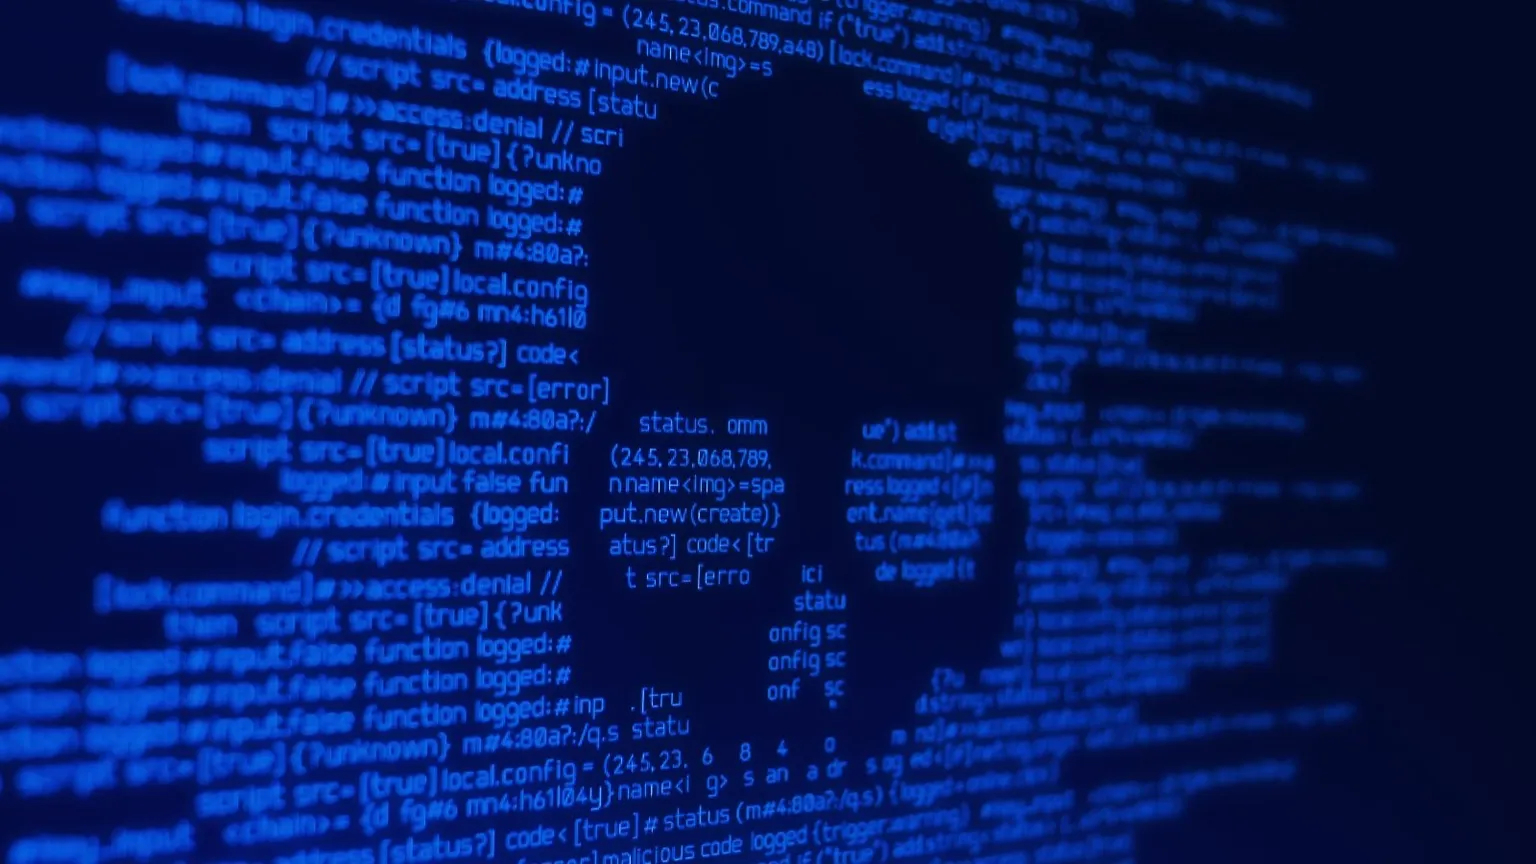 Los investigadores encuentran un nuevo malware que supone una triple amenaza para los usuarios de criptomonedas. Imagen: Shutterstock